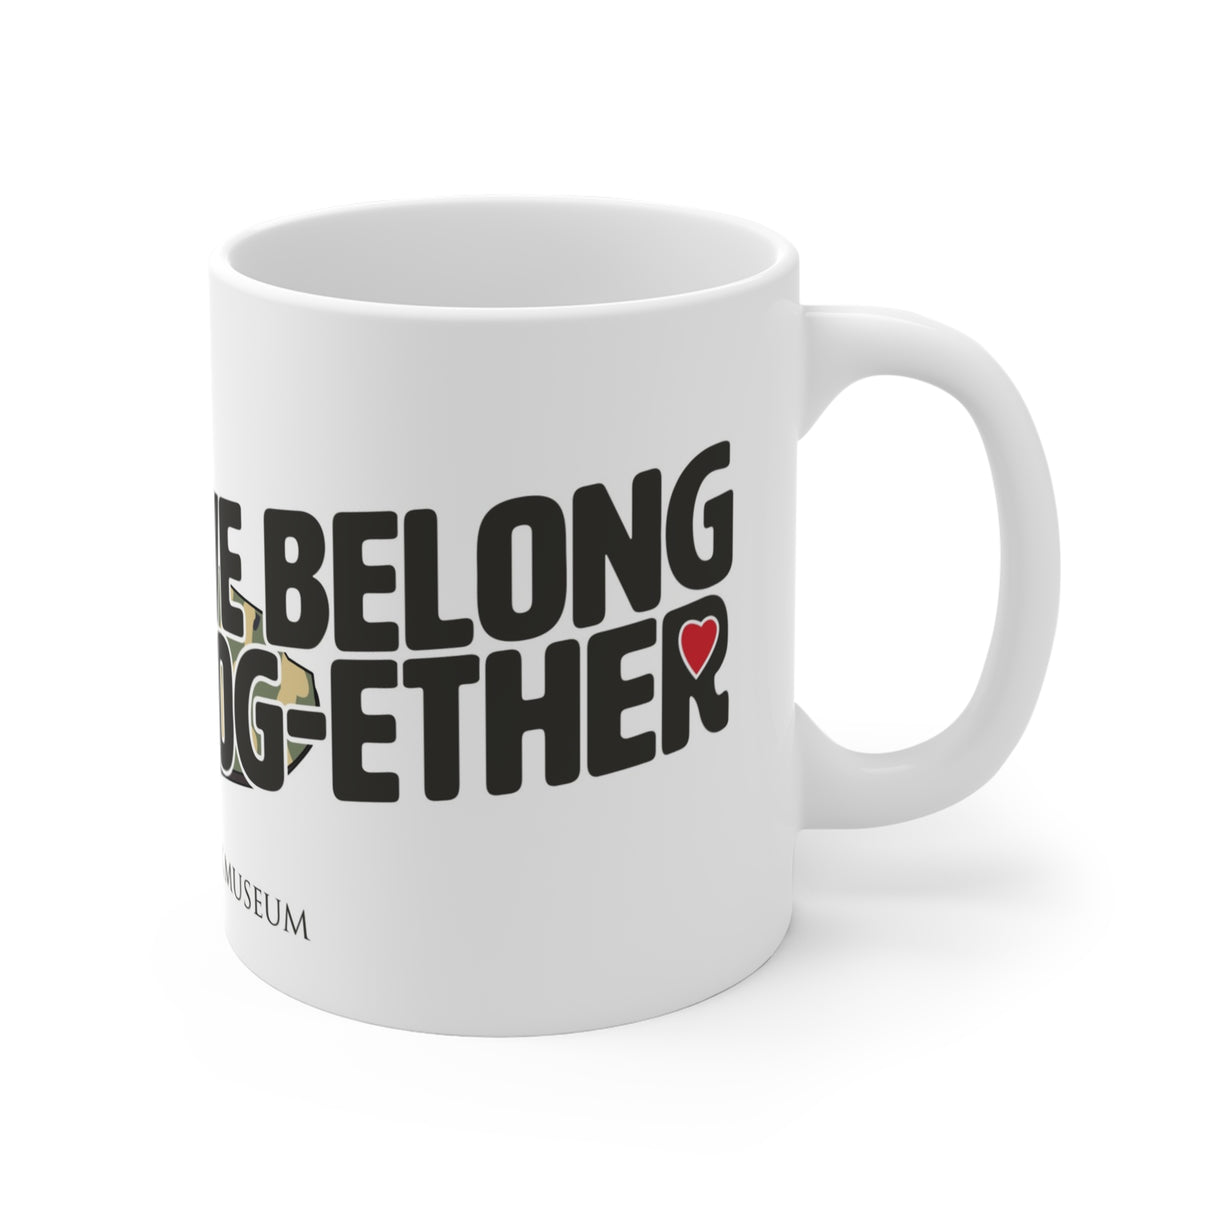 We Belong Tog-ether Ceramic Mug - Limited Edition